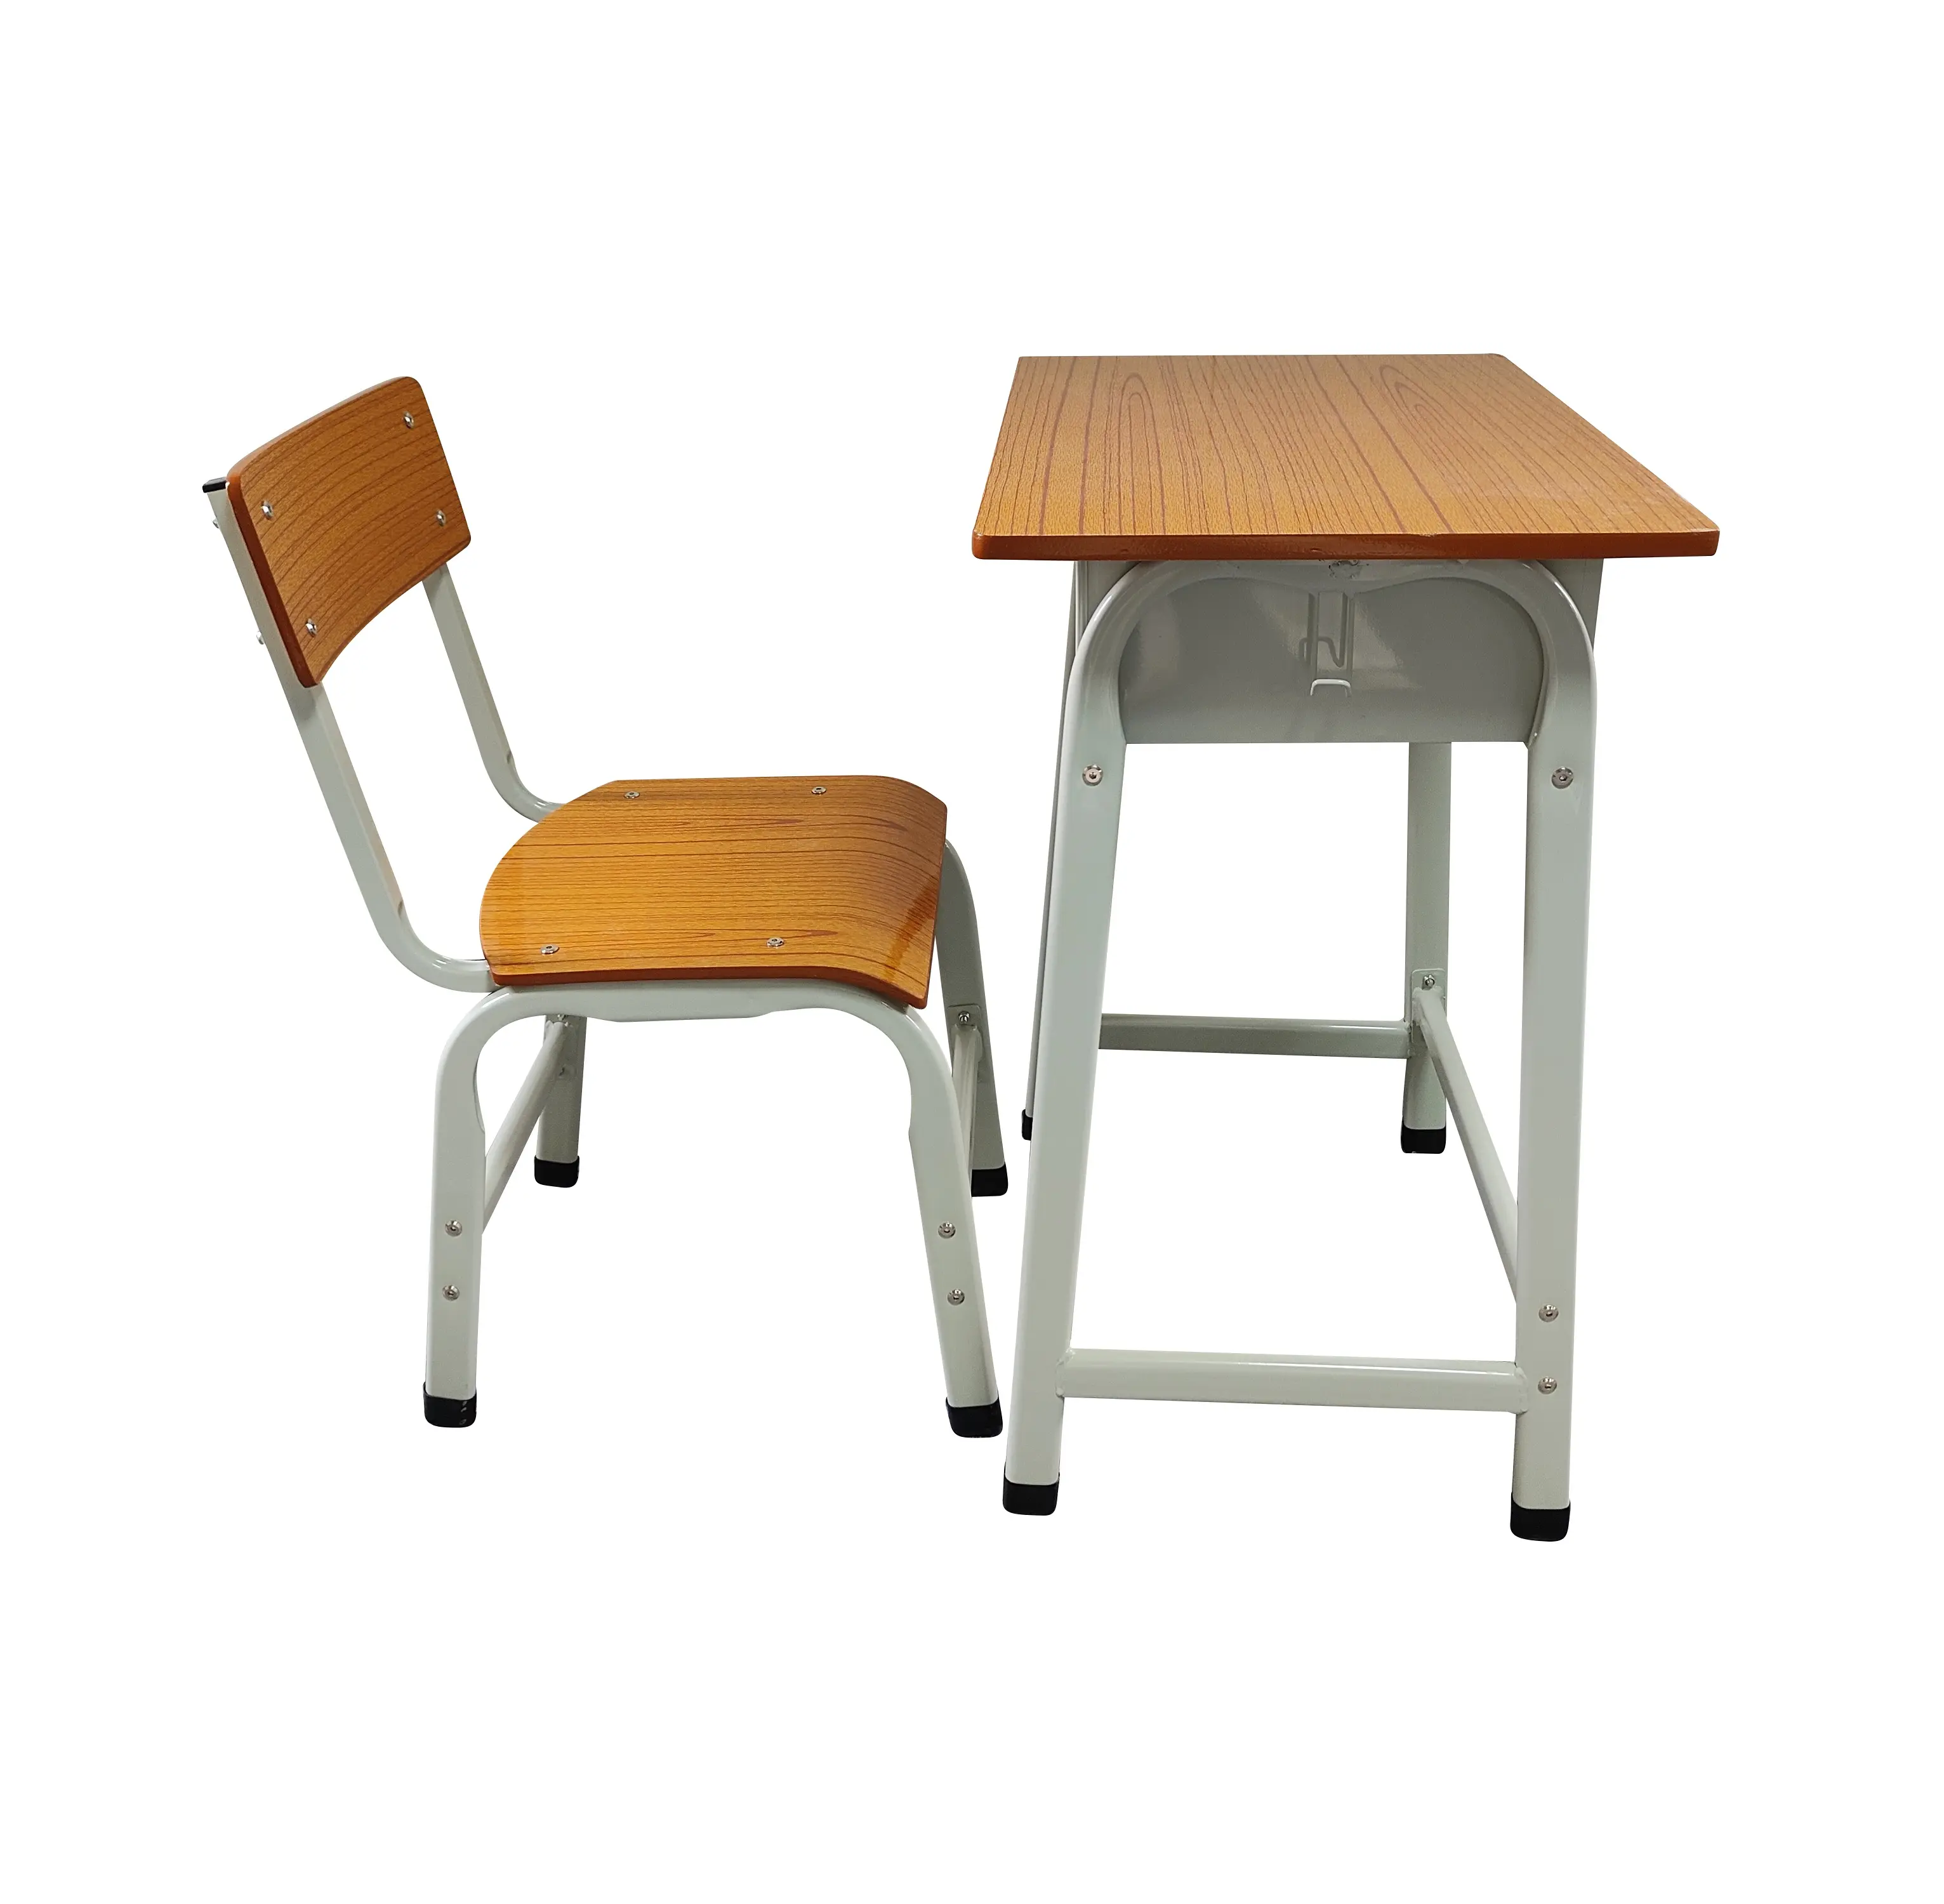 Mesas e cadeiras baratas de metal para estudantes, móveis escolares de design minimalista para escritório doméstico, quarto e sala de estar para estudantes